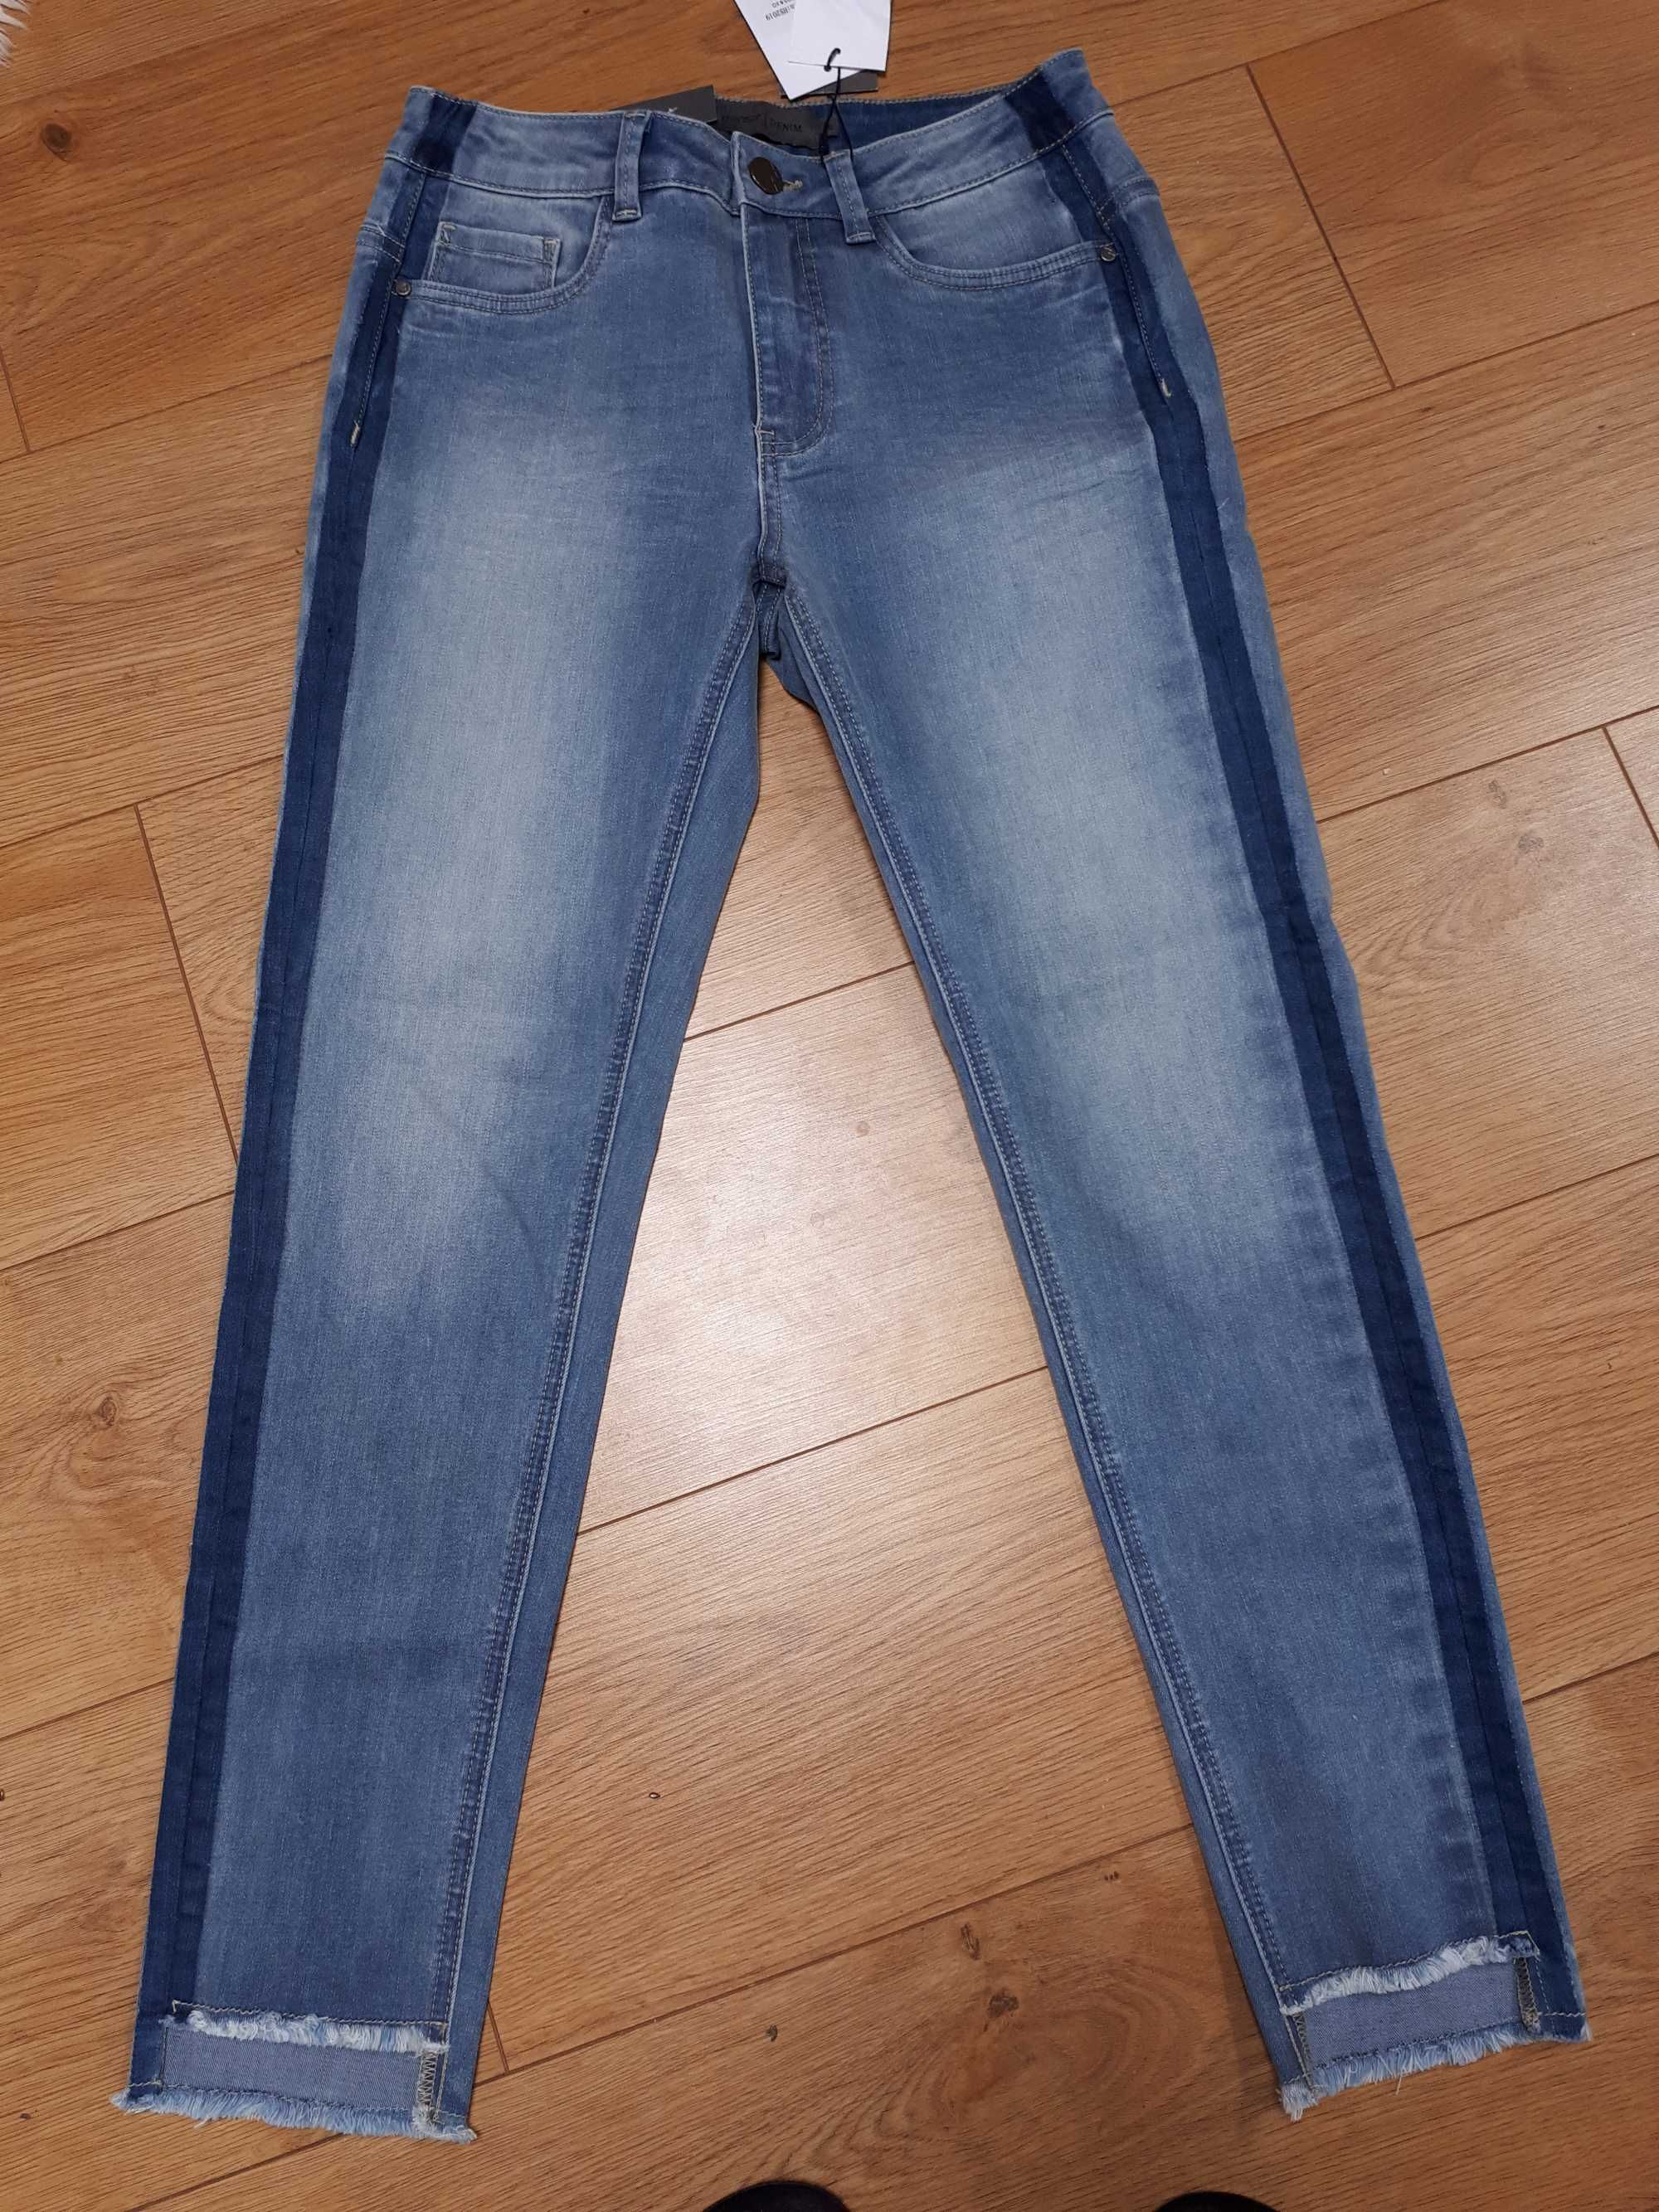 spodnie jeansowe damskie rozmiar 36 tokyo. NOWE z metką.